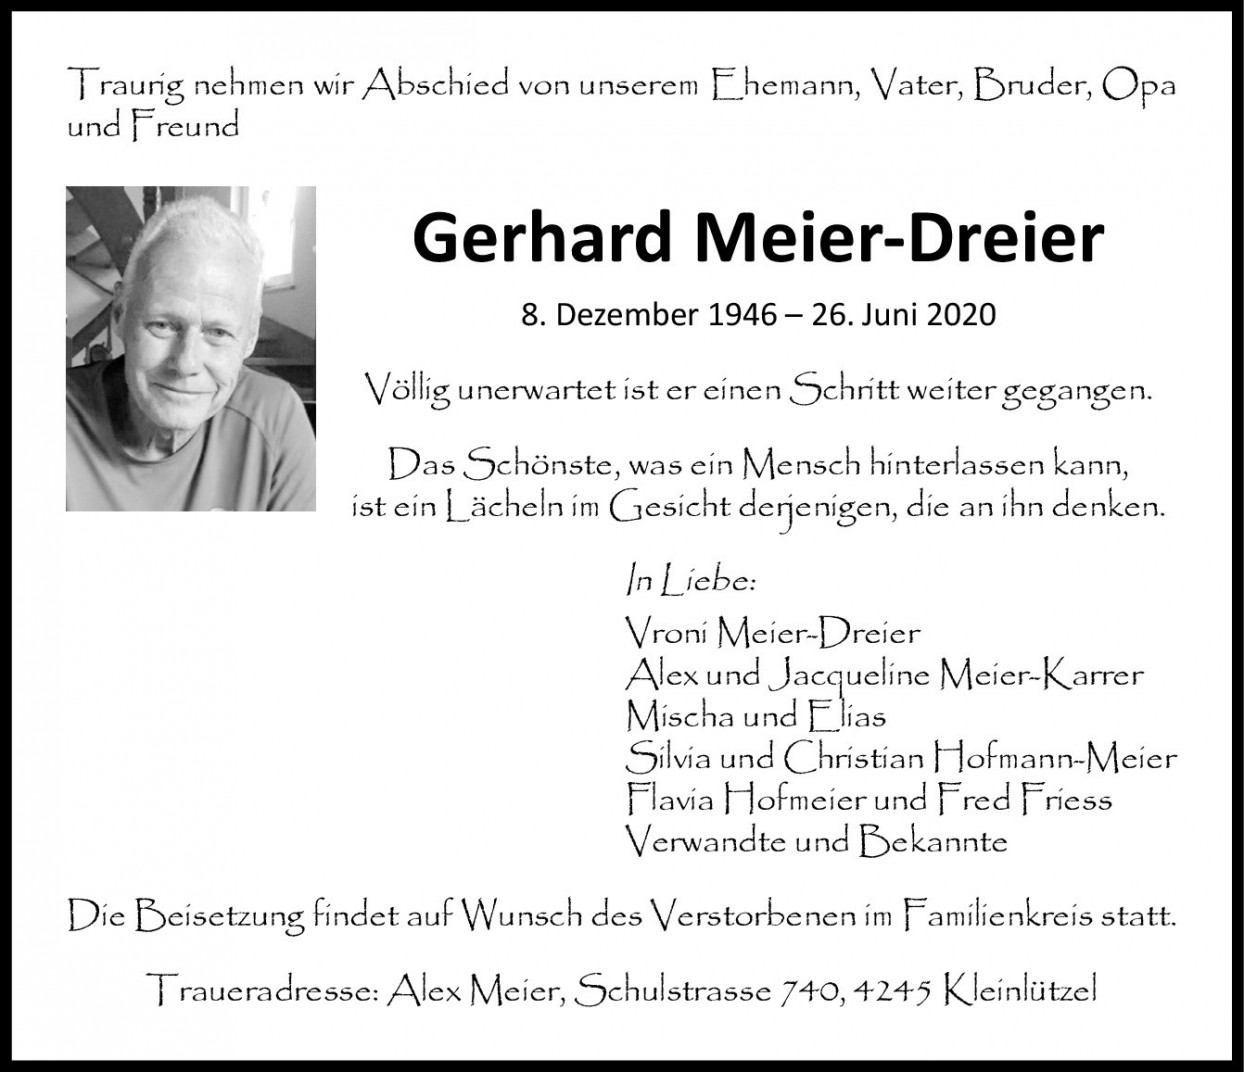 Gerhard Meier-Dreier